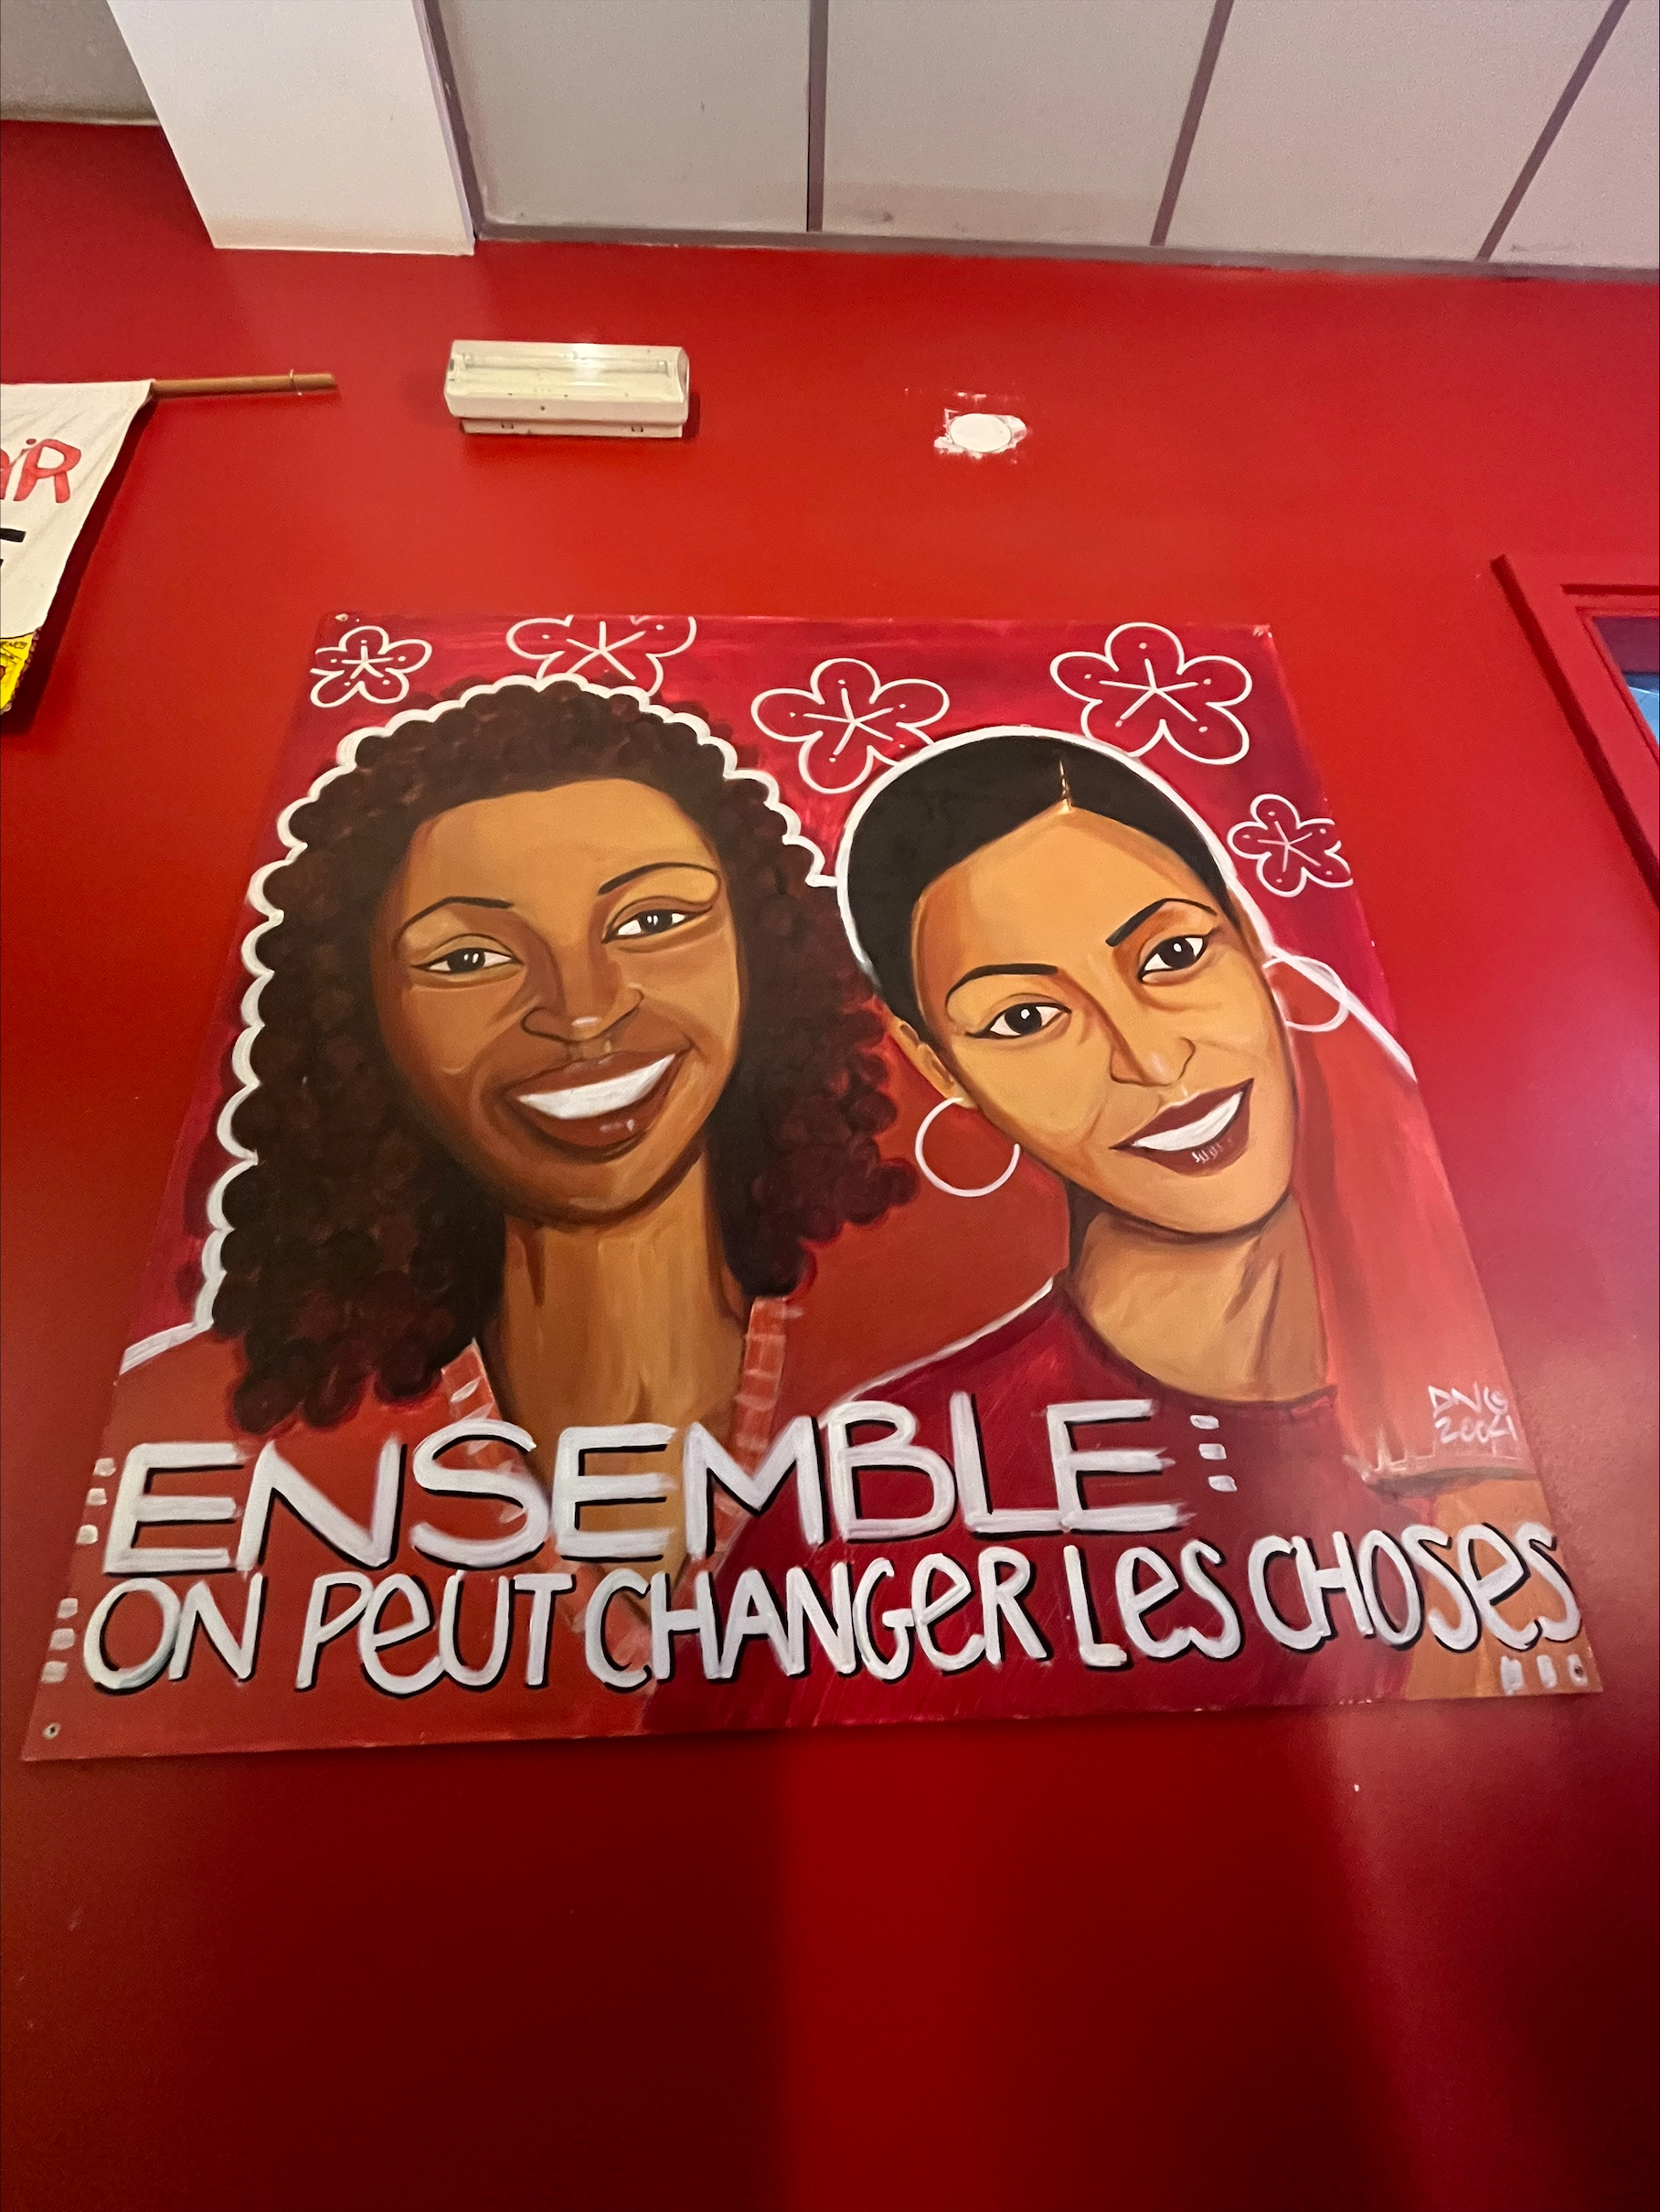 Peinture murale représentant deux femmes issues de la diversité avec l'inscription: "Ensemble on peut changer les choses".